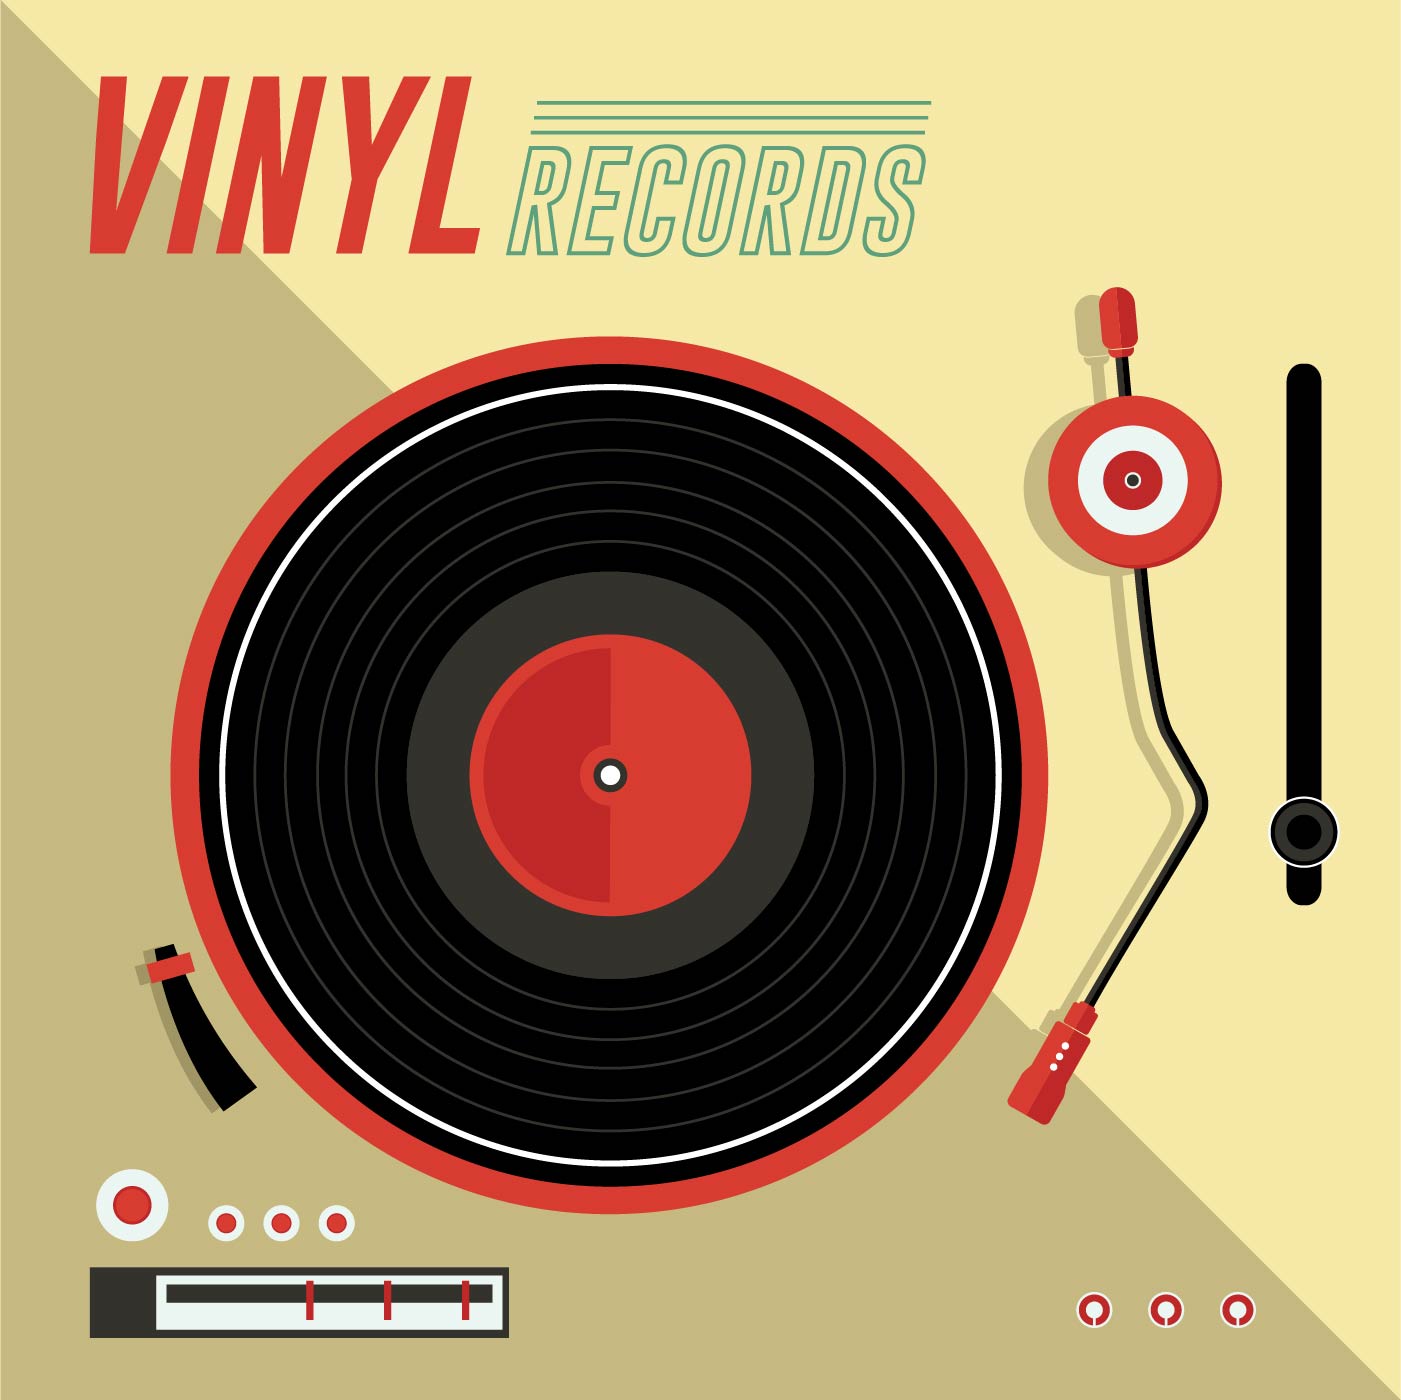 Download Vinyl Records 210870 - Download Free Vectors, Clipart ...